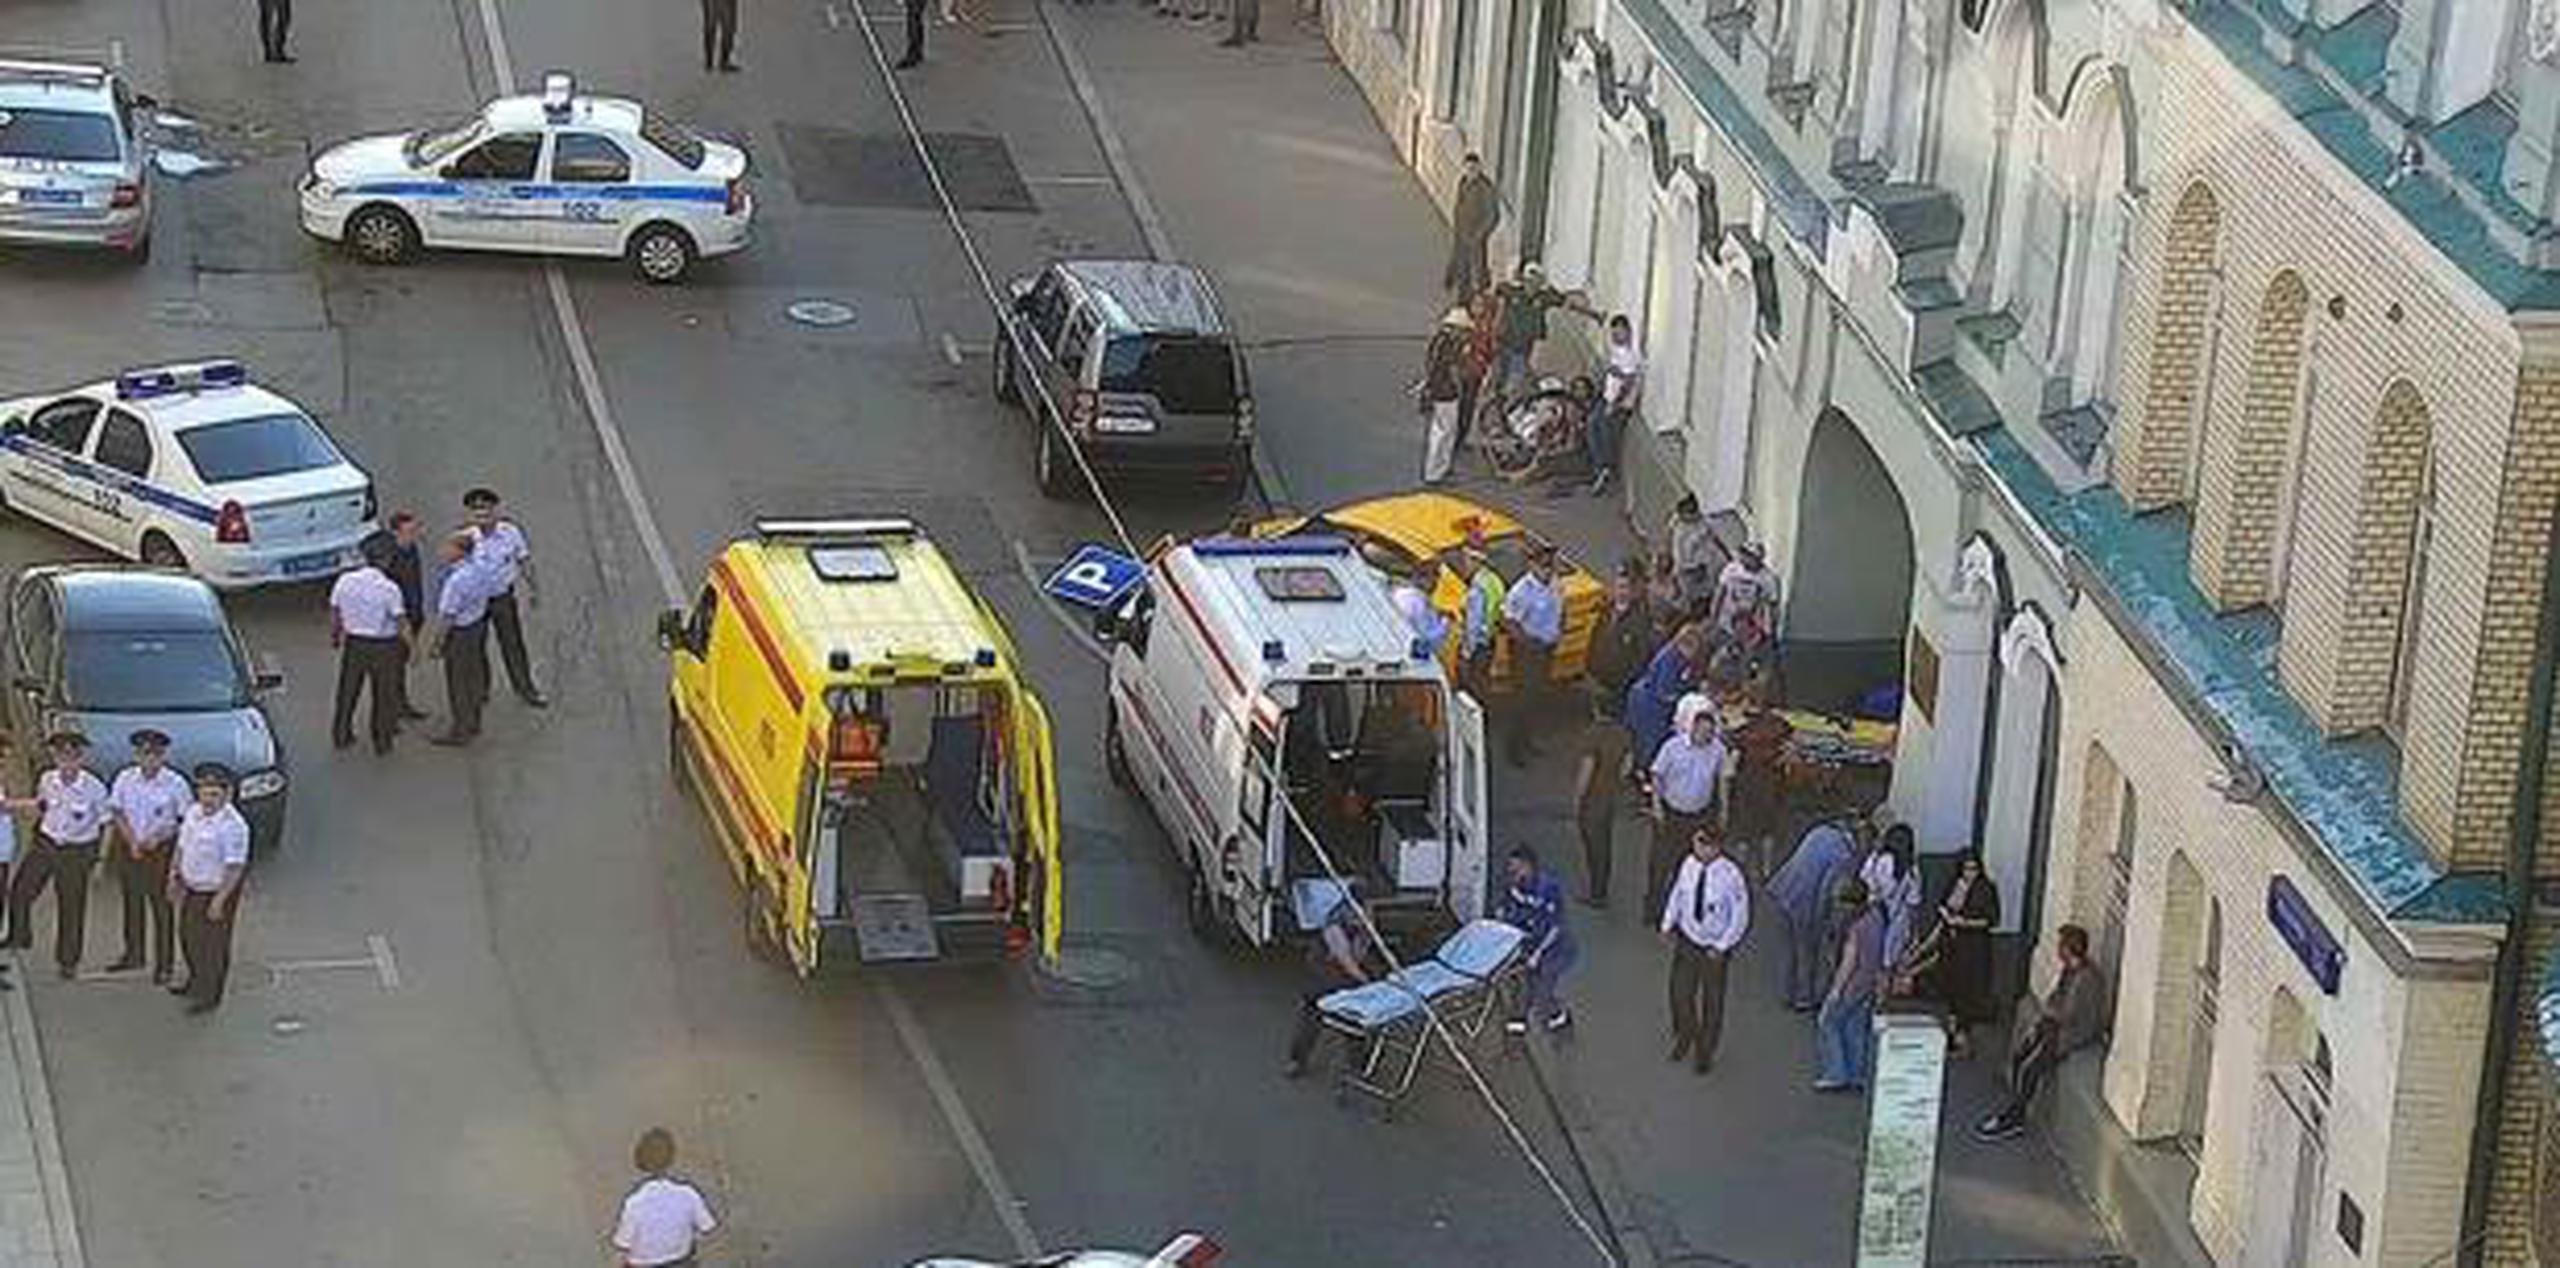 El atropello sucedió en la calle Ilinka, a unos 200 metros de la zona comercial GUM que está en la Plaza Roja. (Oficina de prensa del Centro de Control de Tránsito de Moscú vía AP)